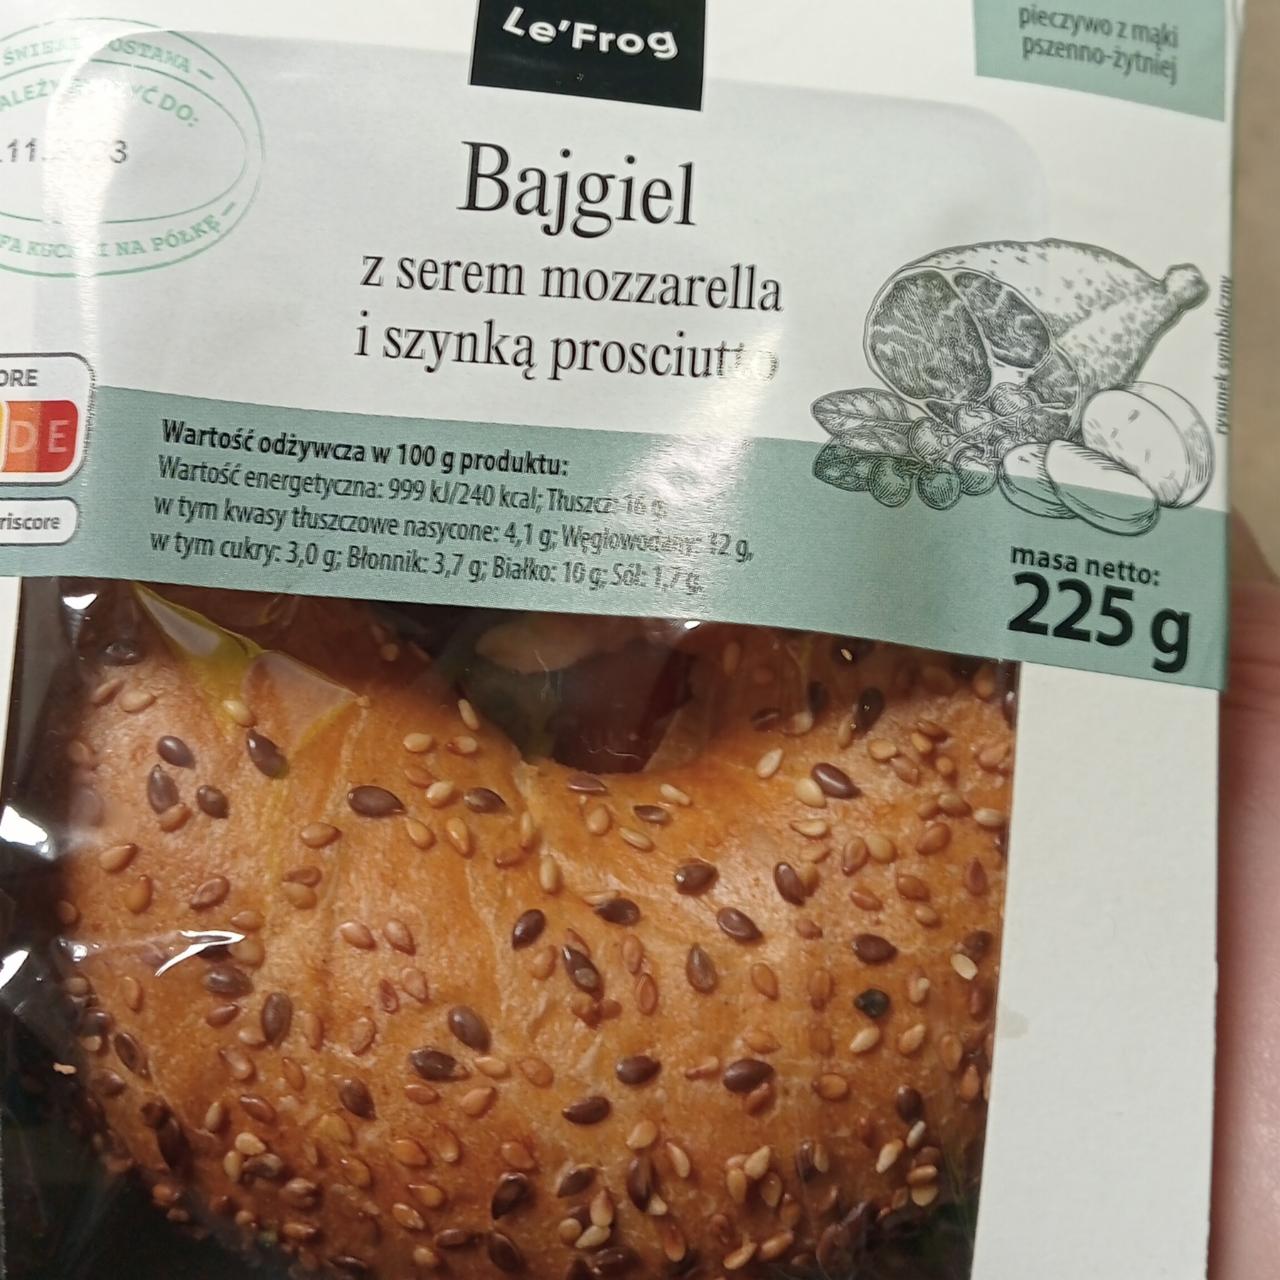 Zdjęcia - Bajgiel z serem mozzarella i szynką prosciutto Le'frog